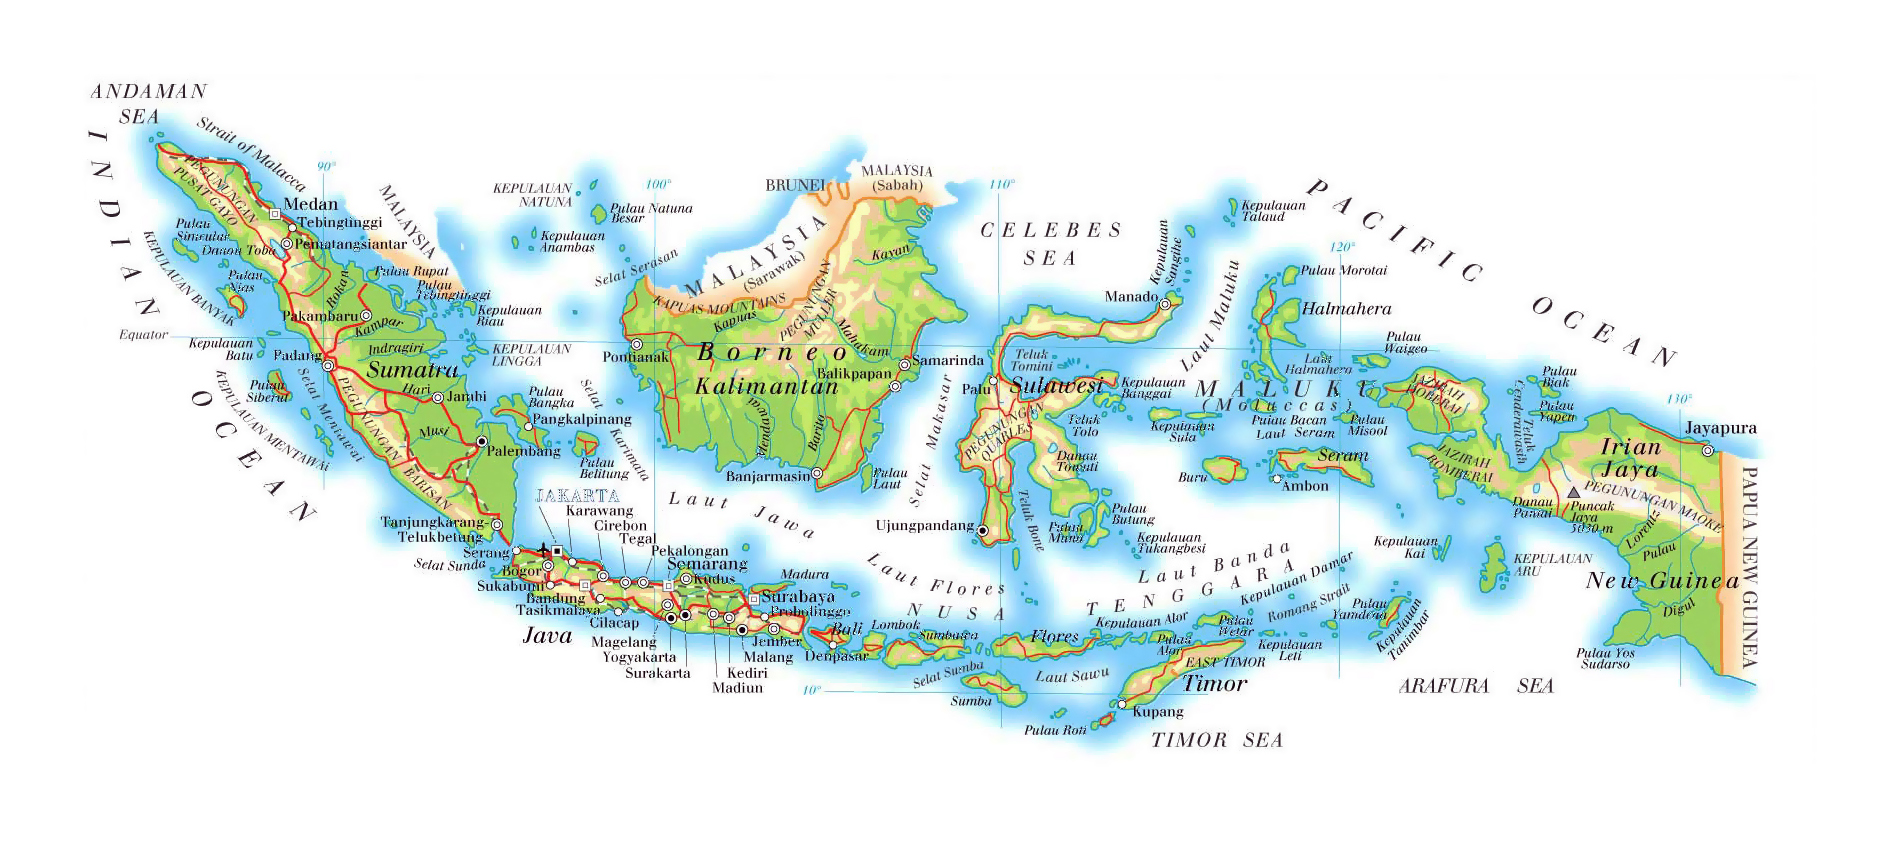 印度尼西亚地图 - 印度尼西亚地图高清版 - 印度尼西亚地图中文版